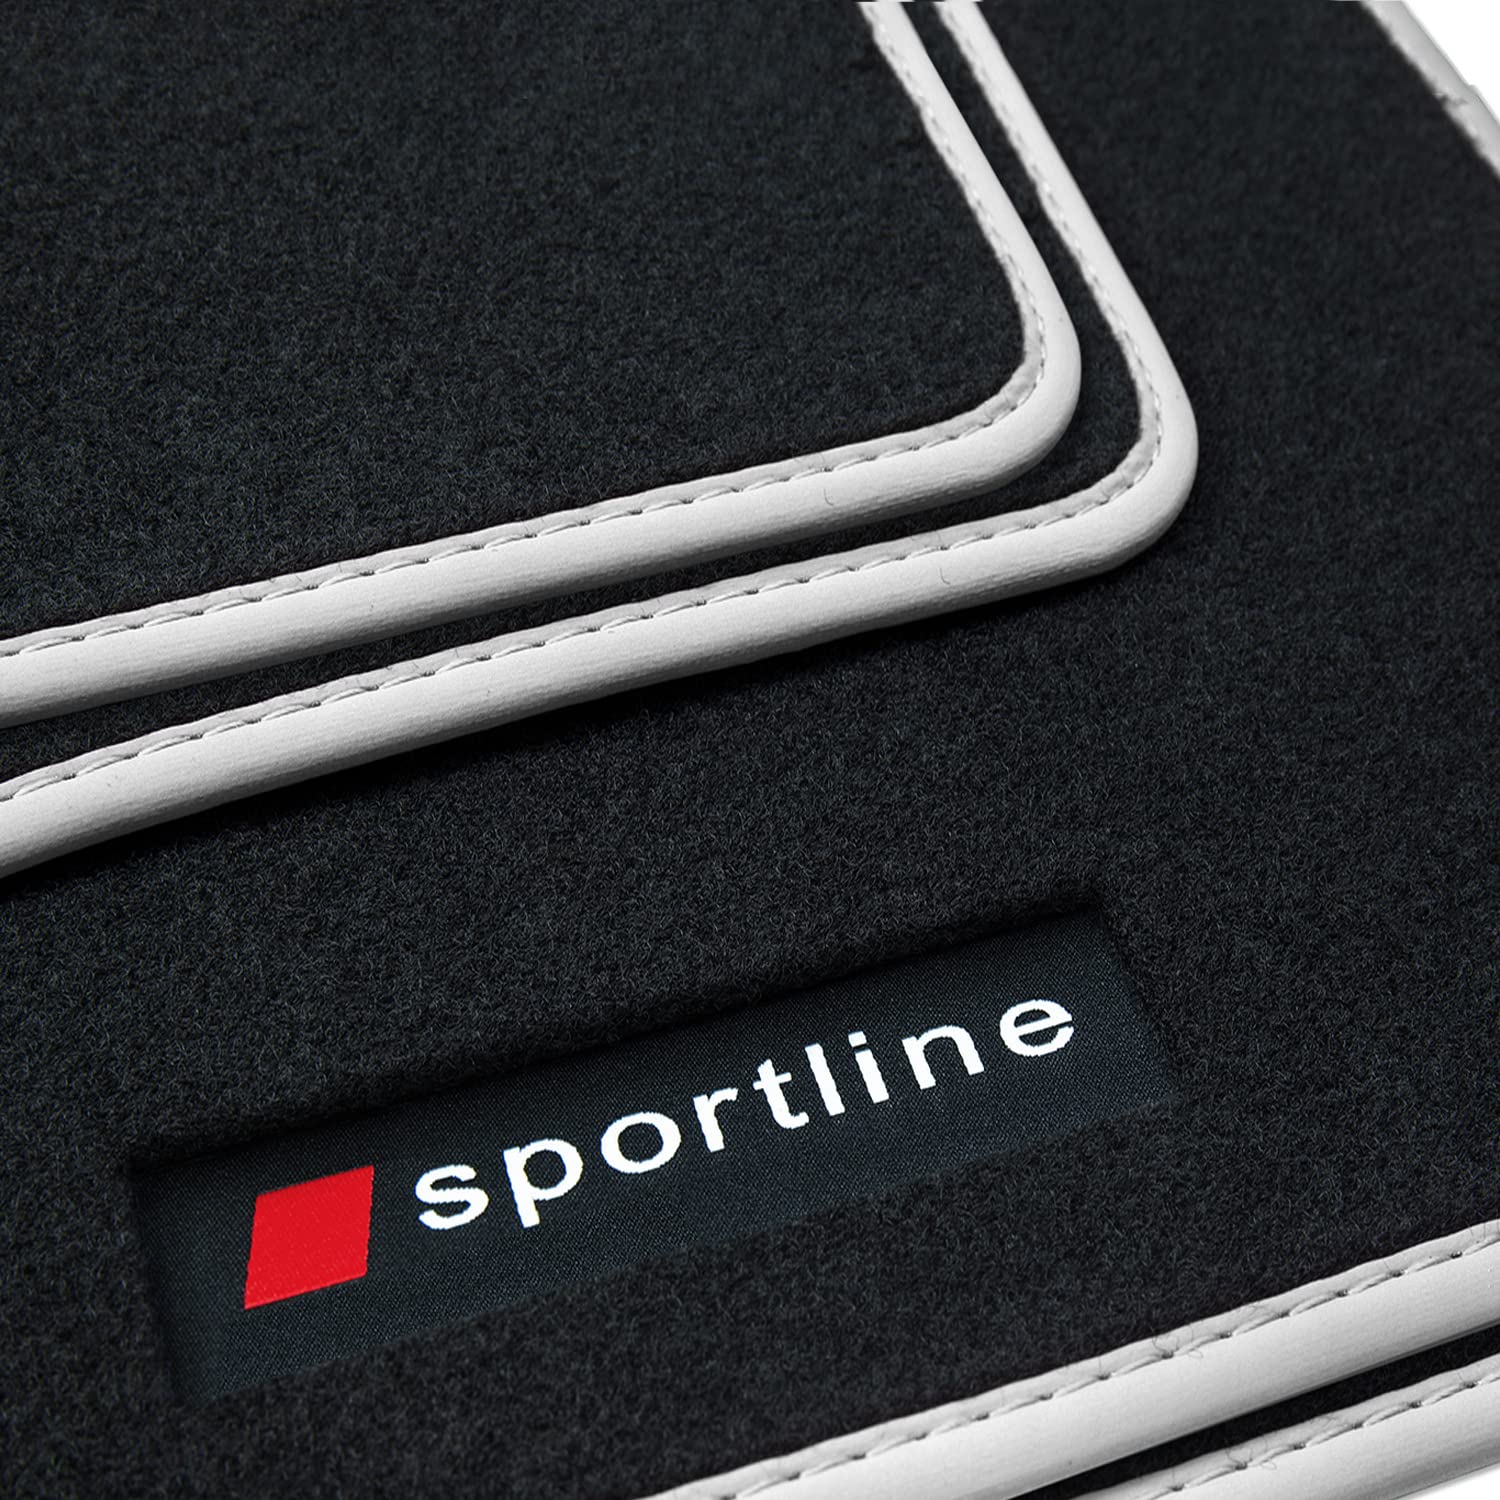 teileplus24 PV312 Fußmatten Gummimatten Sportline Design kompatibel mit Audi A3 8Y Sportback Limo 2020-, Bandeinfassung:Silber von teileplus24